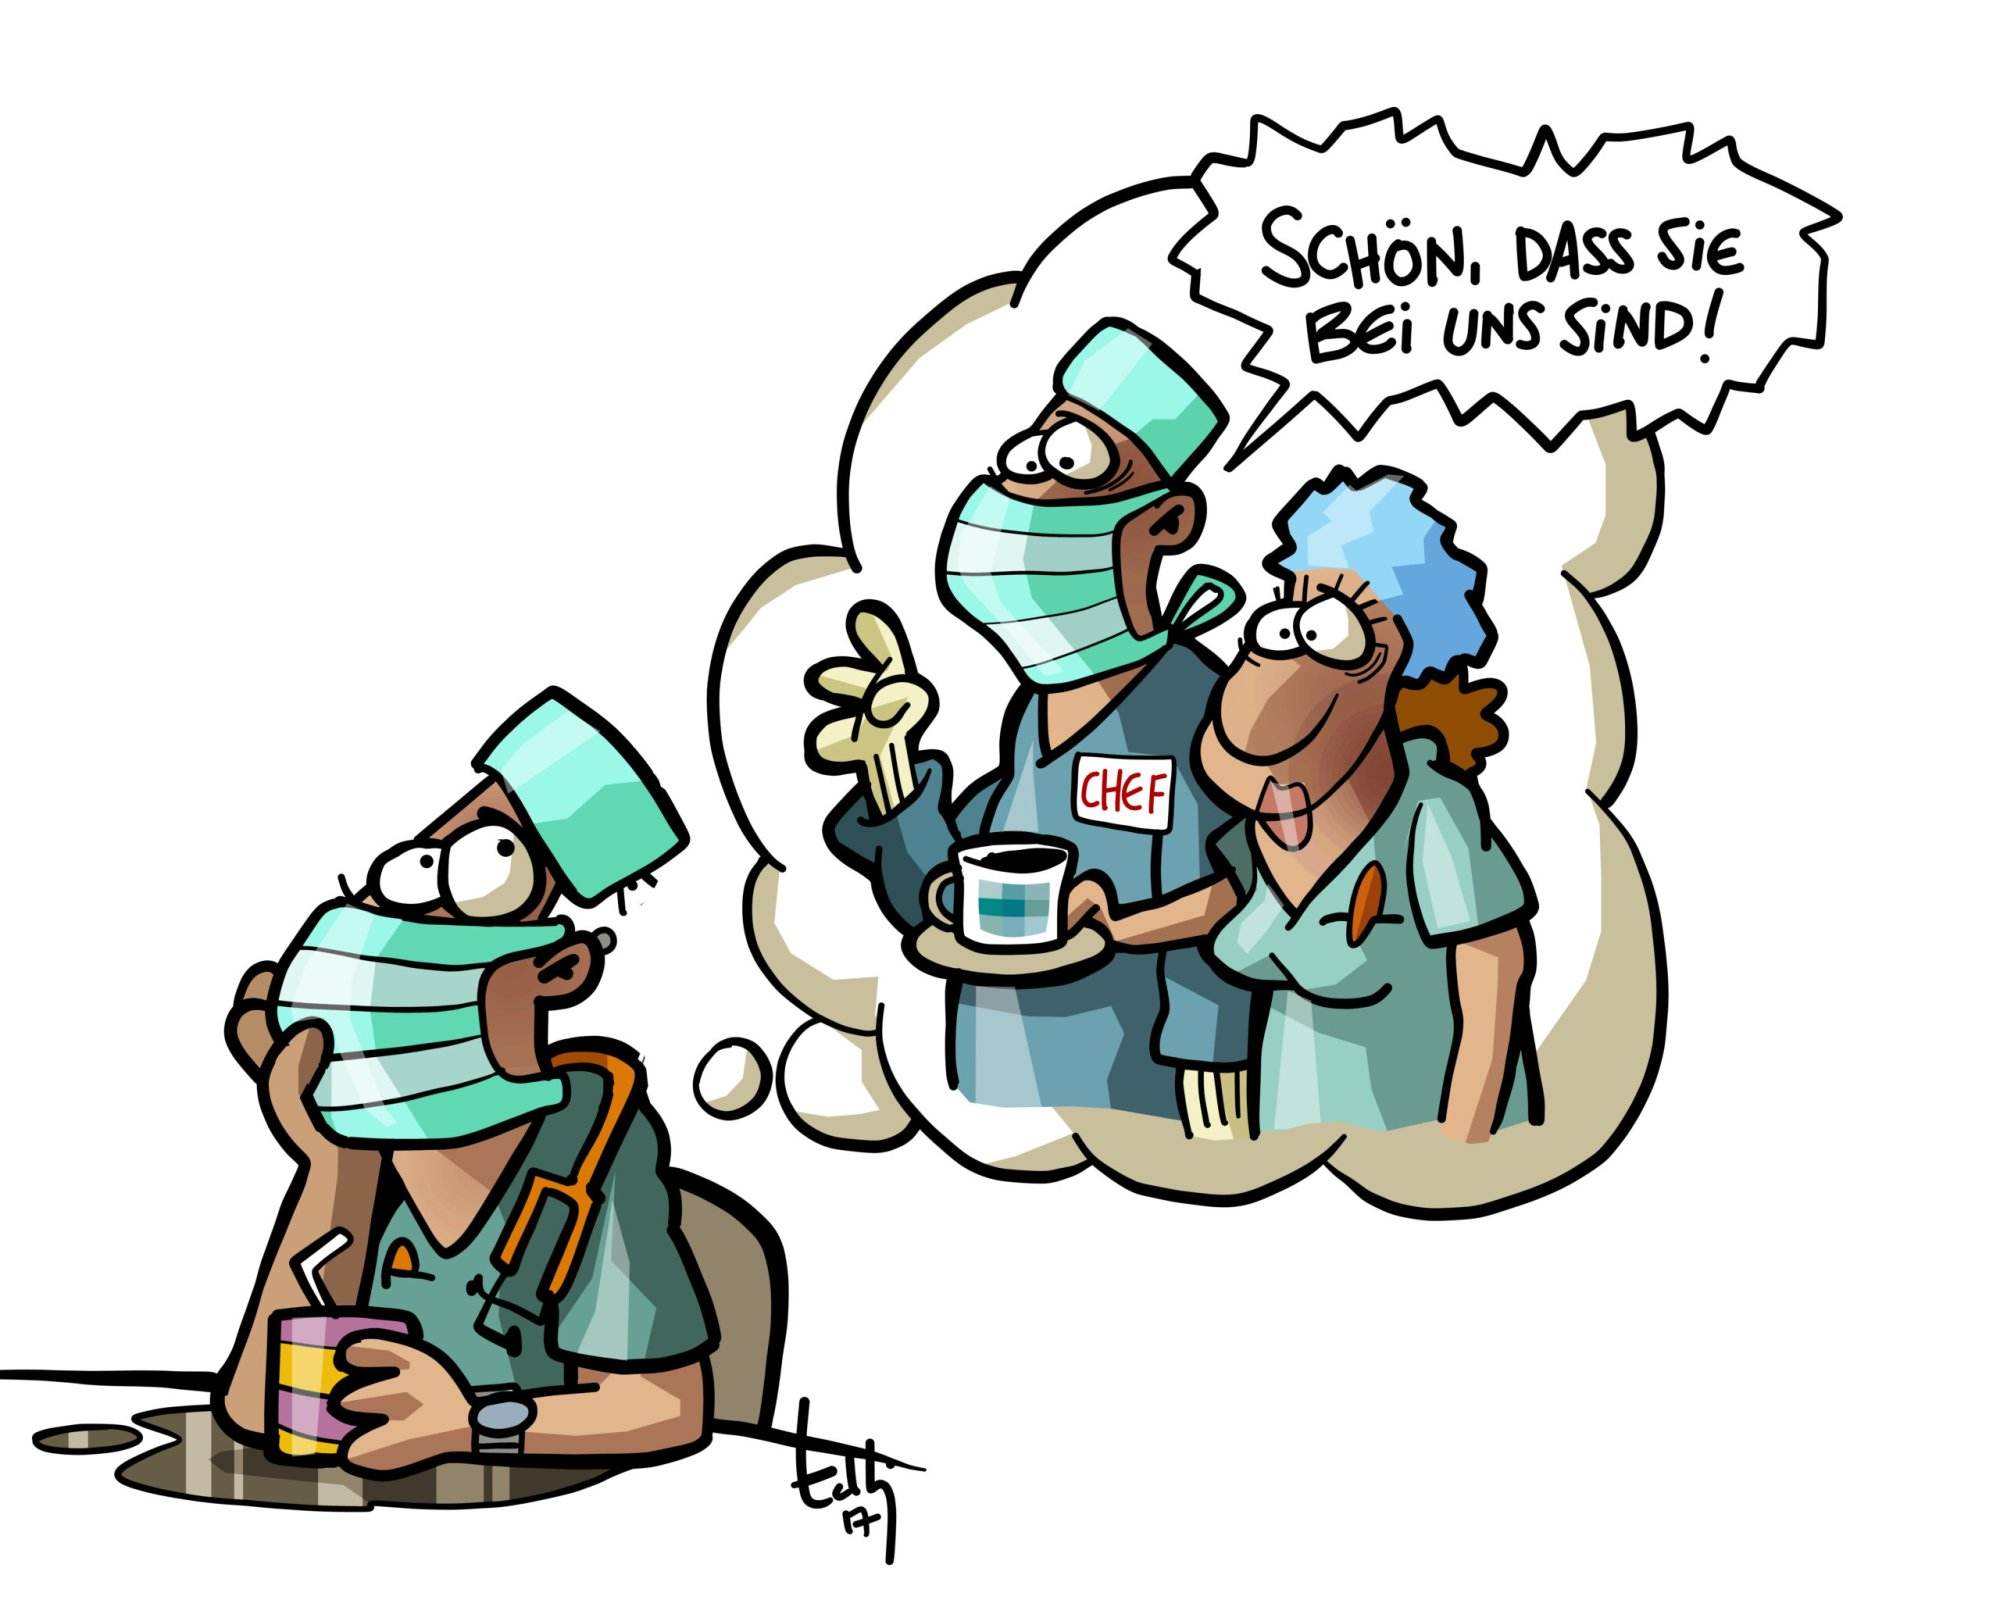 Cartoon: Ein Arzt mit Maske und Kittel denkt in einer Sprechblase an den Chef und Kollegen von Hire a Doctor. Die Gedanken zeigen Wertschätzung, während der Chef sagt: 'Schön, dass Sie bei uns sind!